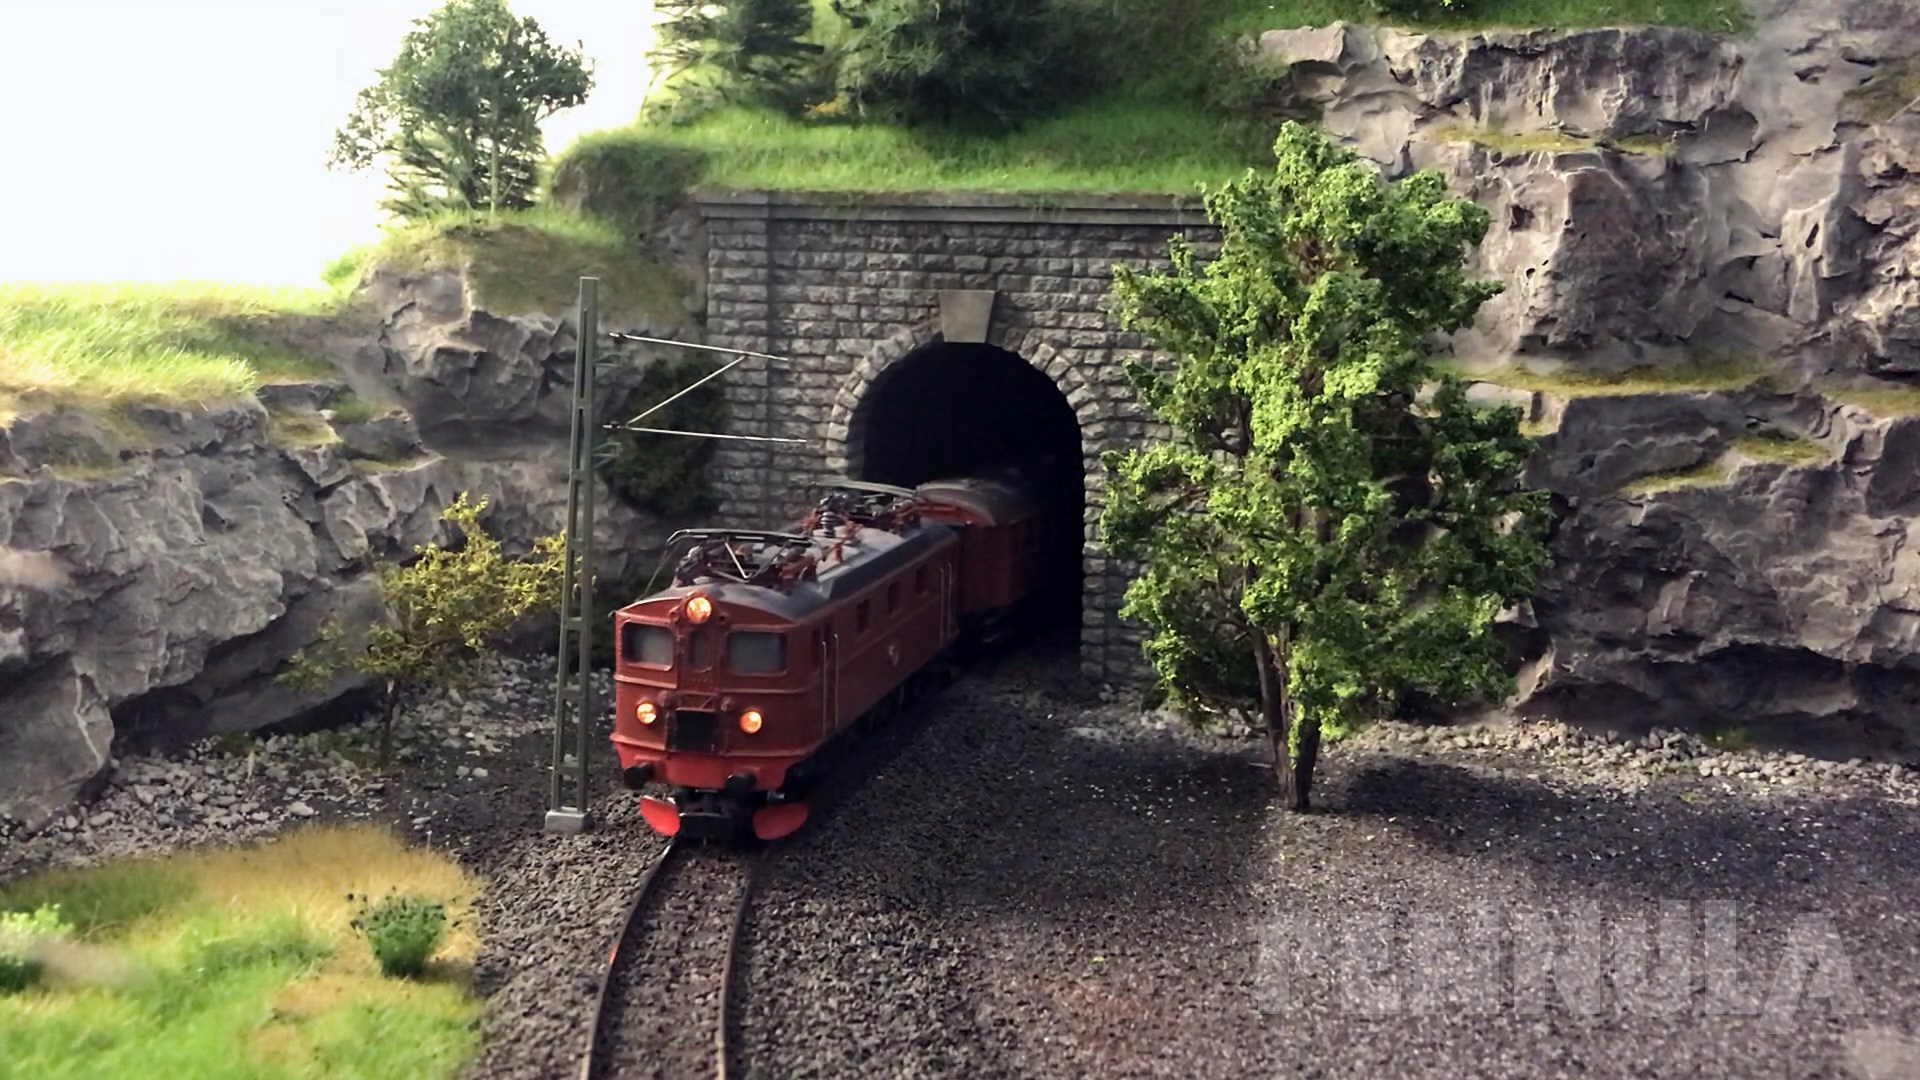 Märklin Modelleisenbahn in Spur H0 mit Dampflokomotiven, E-Loks und RC Autos aus Schweden